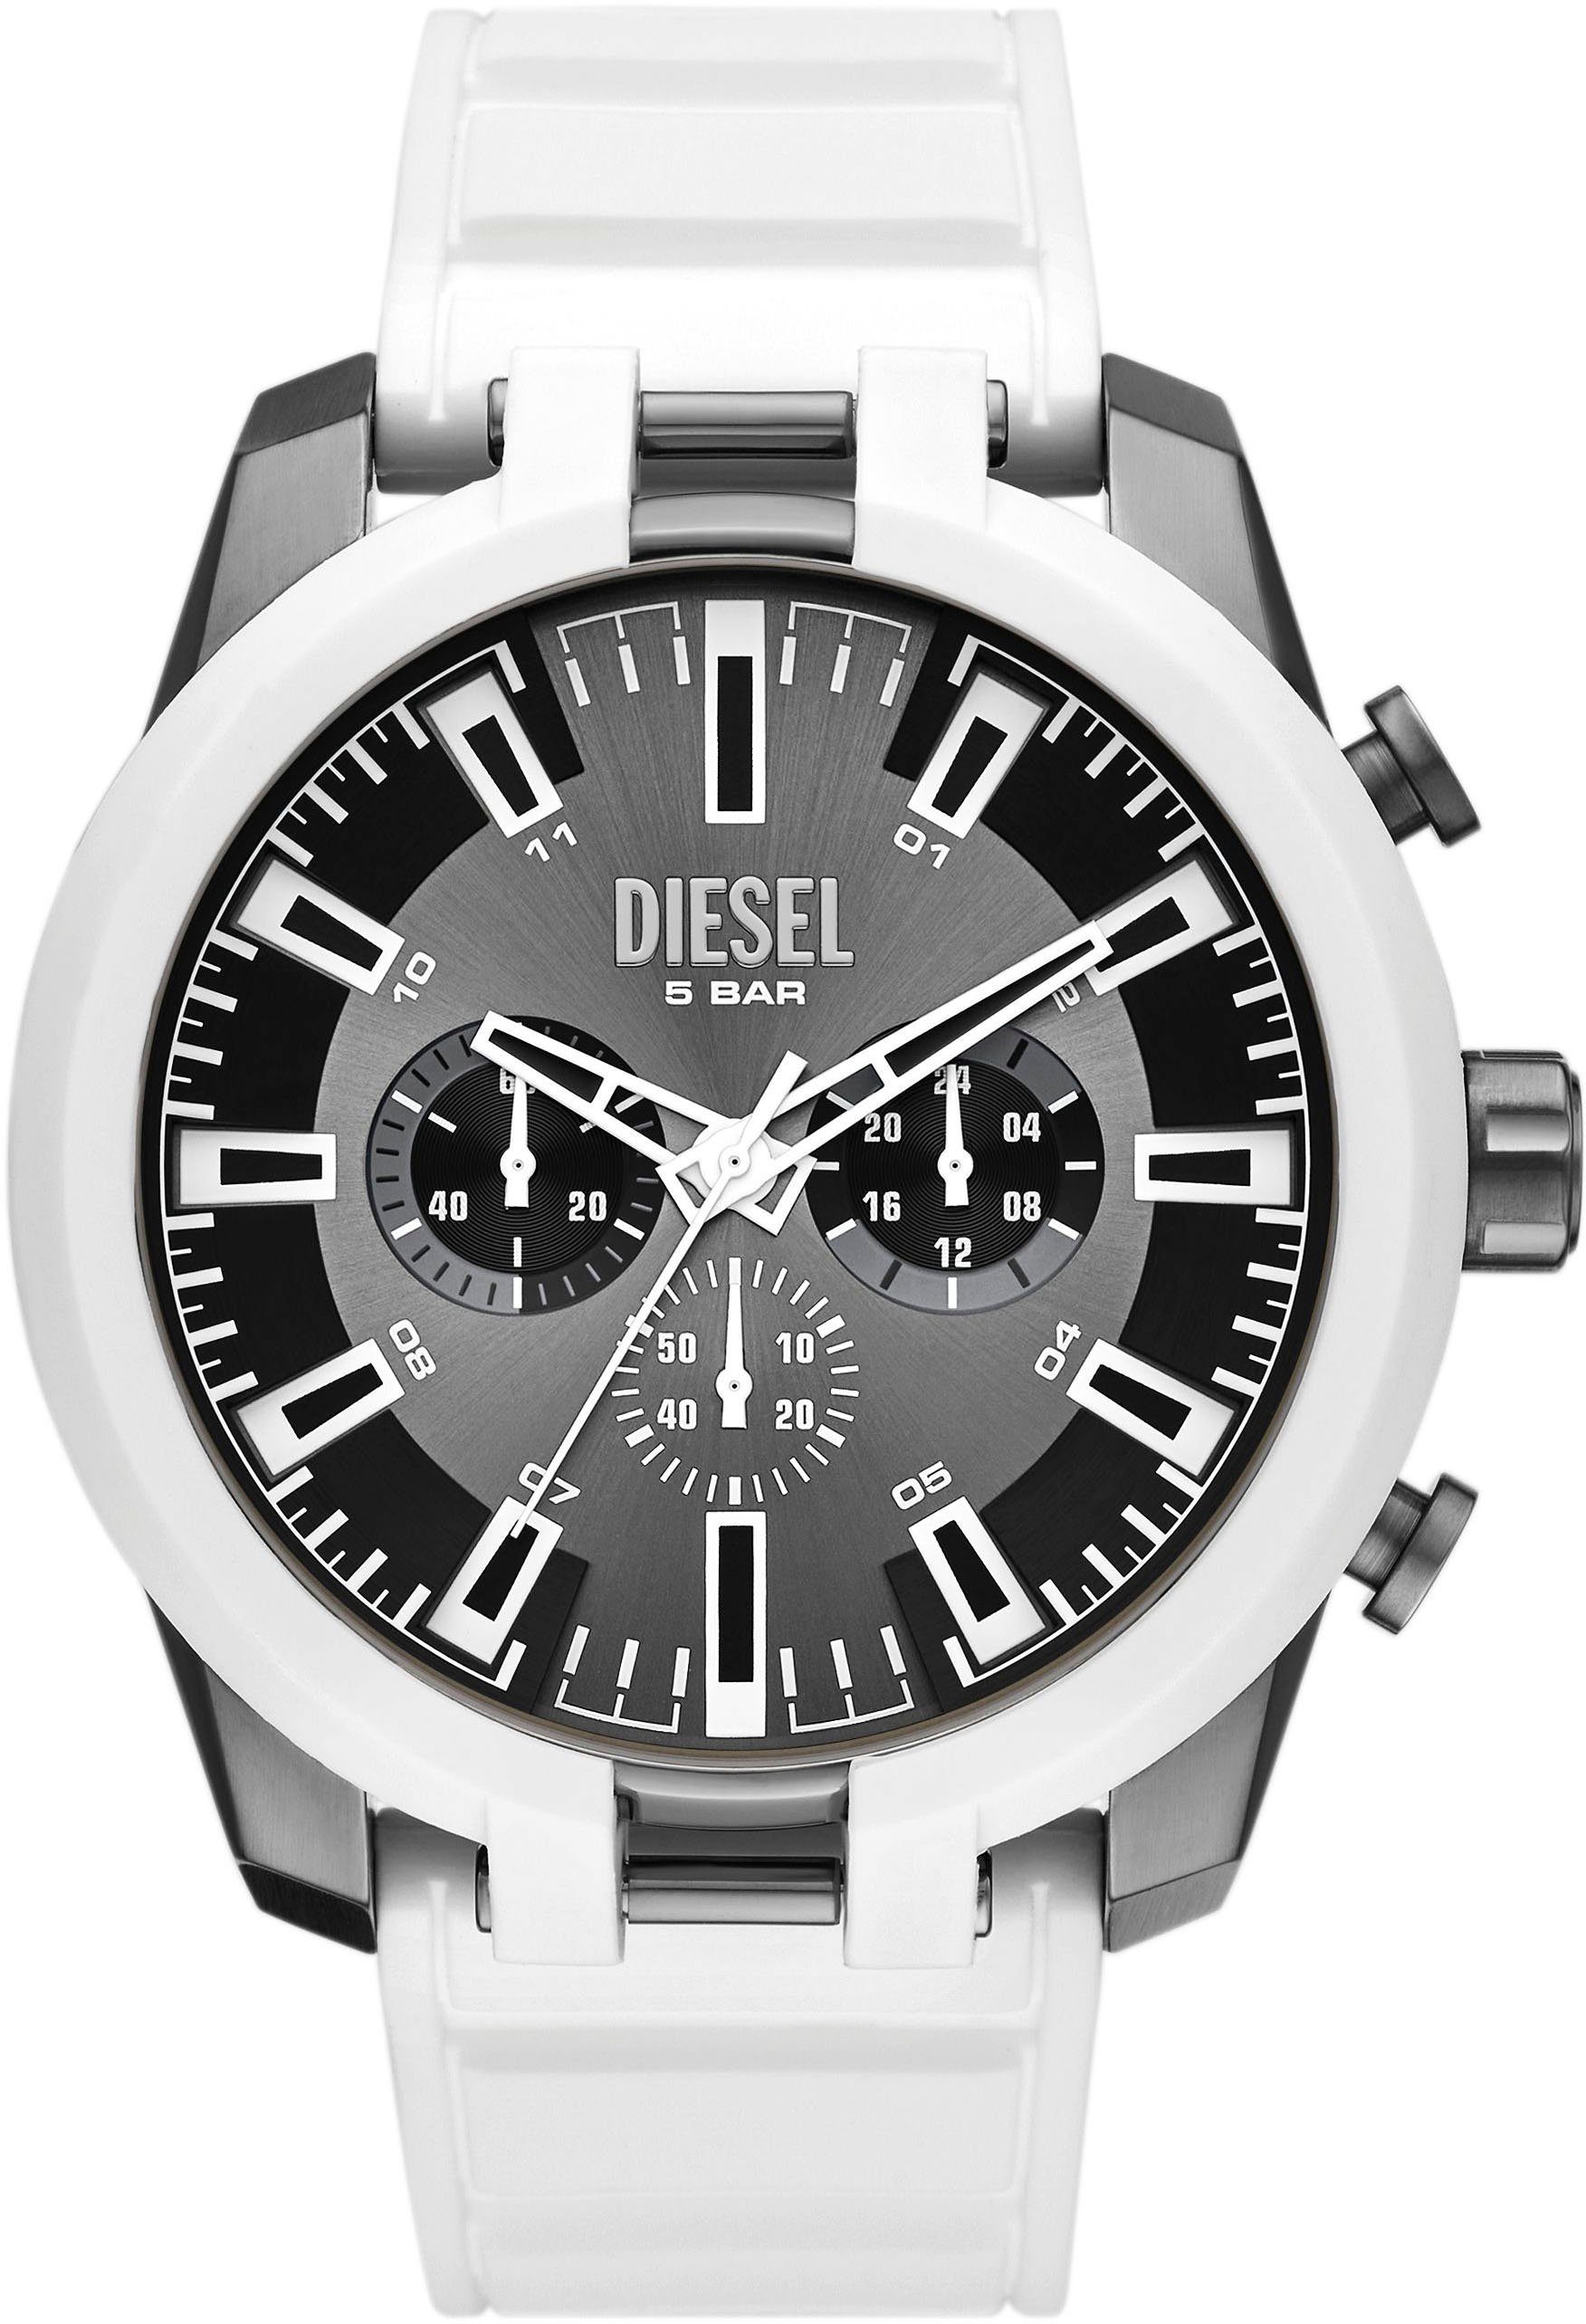 Diesel Chronograph SPLIT, DZ4631, Quarzuhr, Armbanduhr, Herrenuhr, Stoppfunktion, 12/24-Stunden-Anzeige